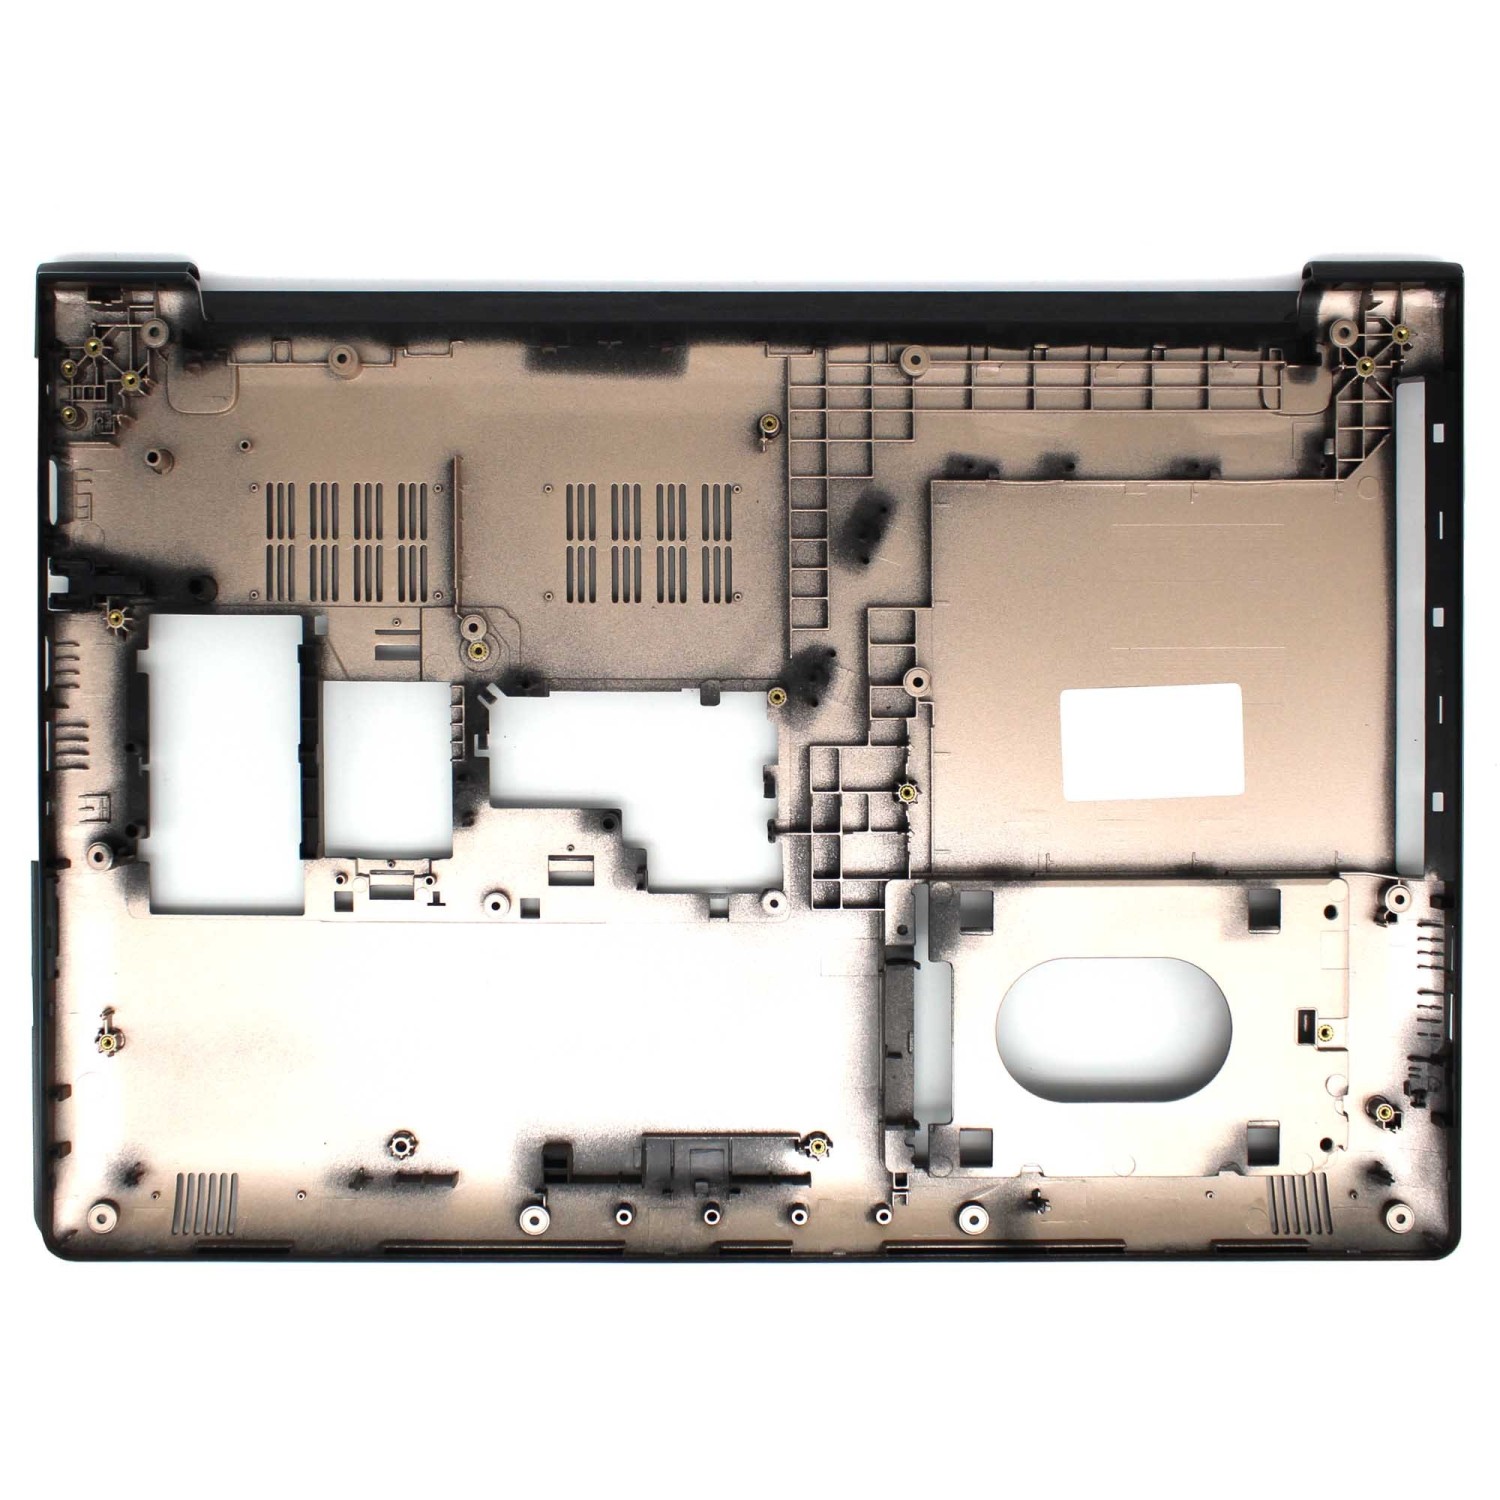  GAOCHENG - Carcasa inferior para ordenador portátil Lenovo  IdeaPad 510-15IKB 5CB0M31171, color blanco : Electrónica